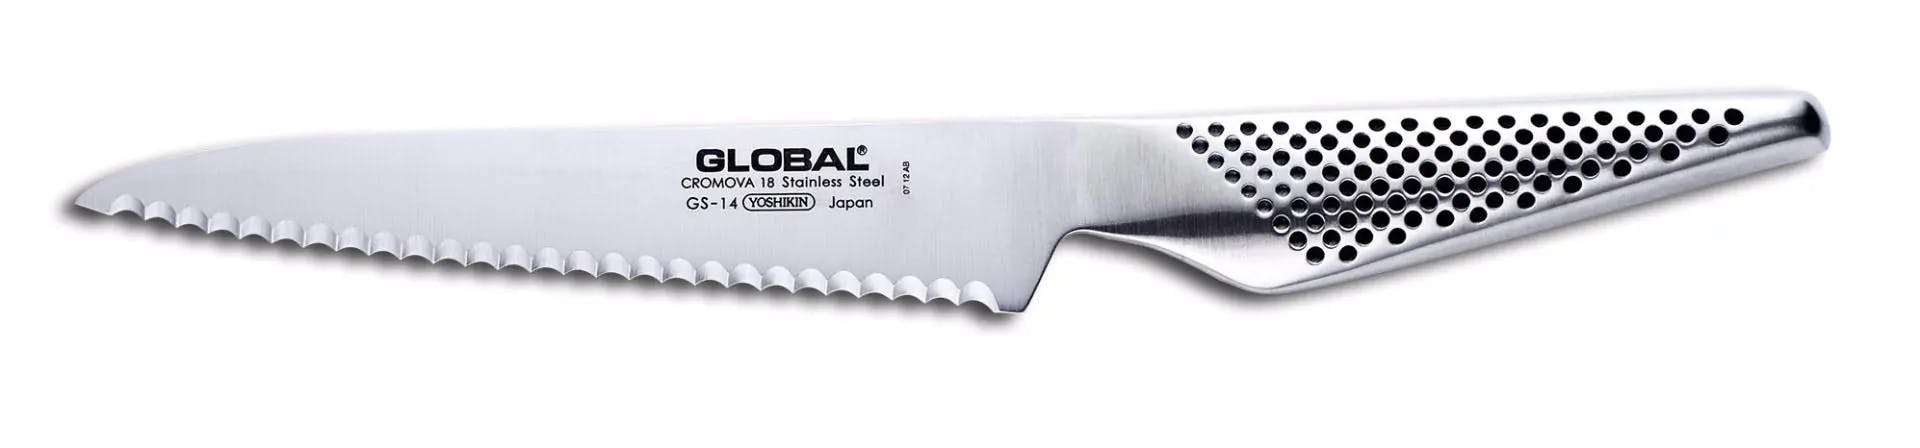 Global Serrated Utility Knife Classic